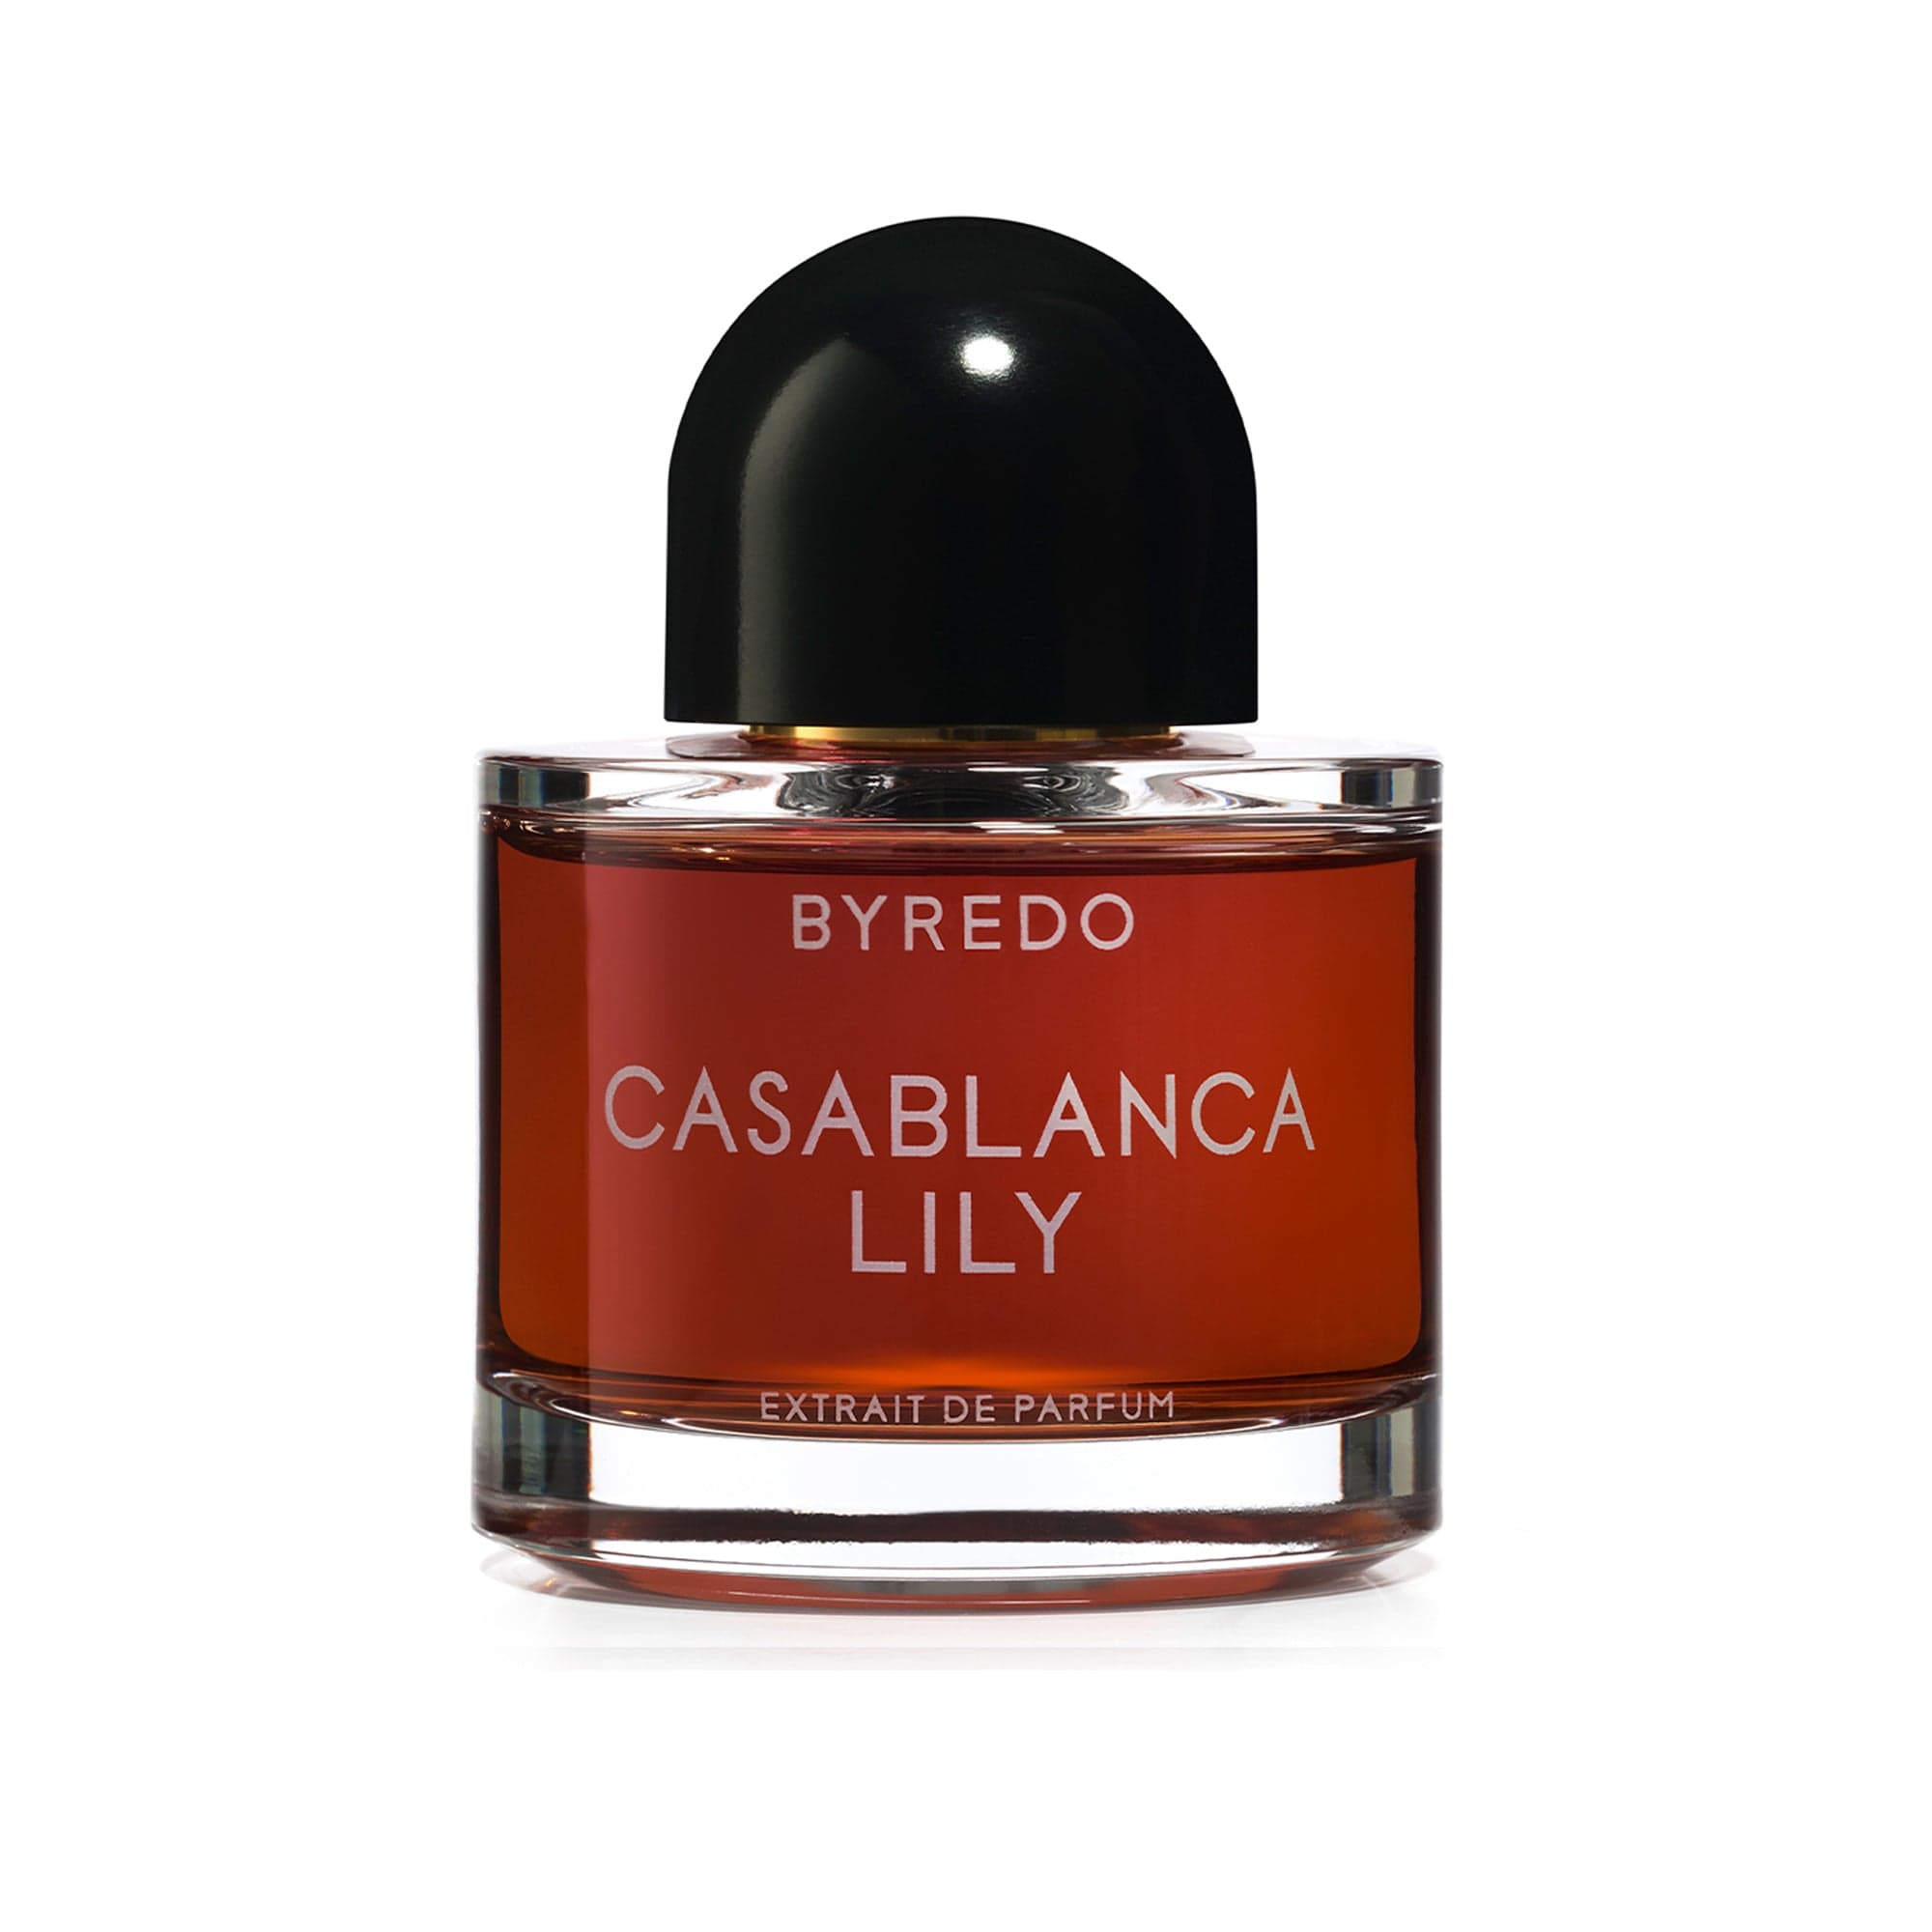 Casablanca Lily de BYREDO Extracto de Perfume